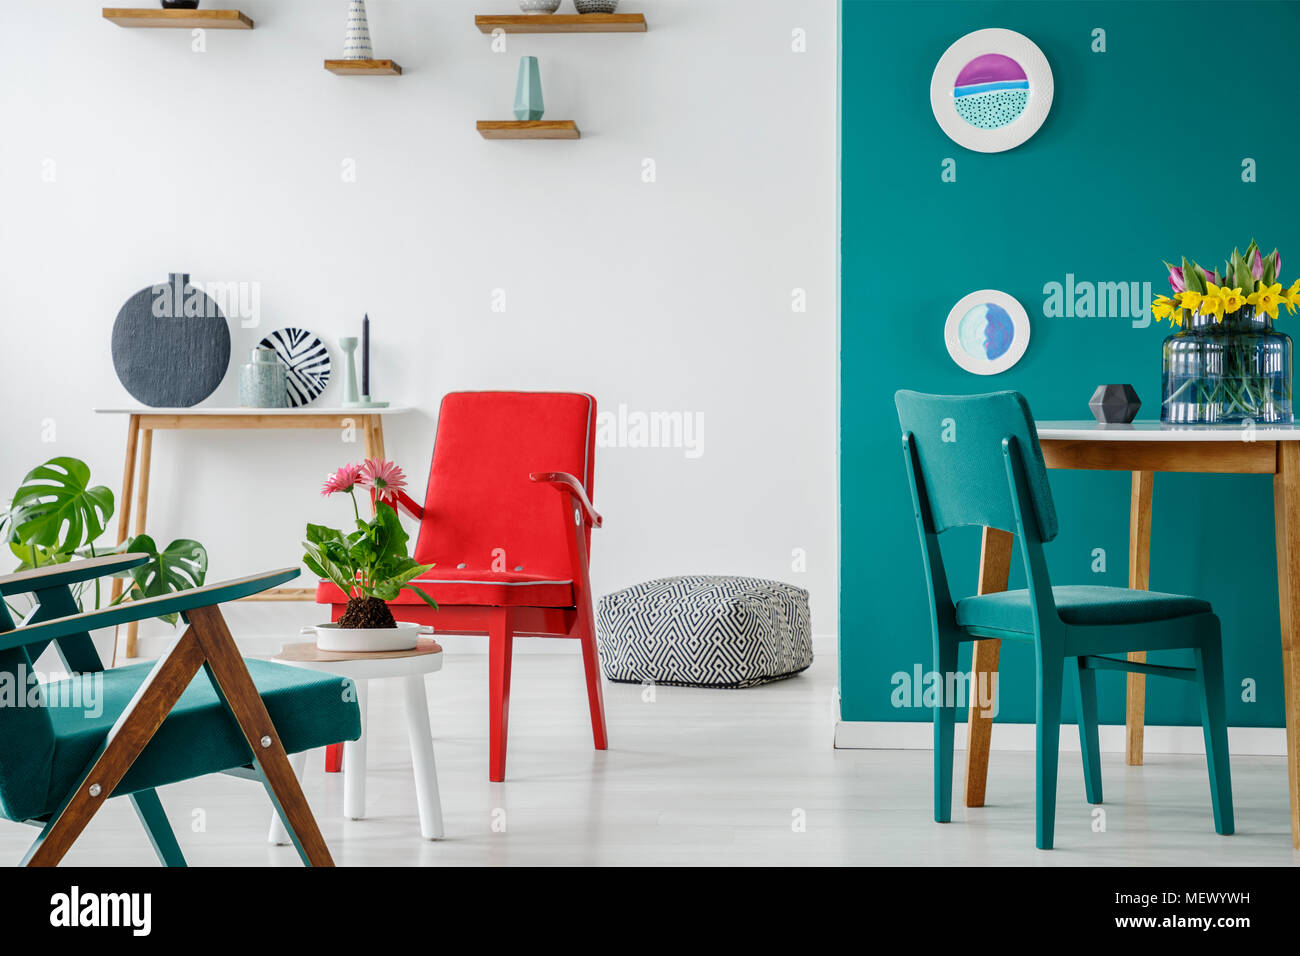 Blauen und Roten Stuhl am Tisch mit Blumen im Wohnzimmer Interieur mit Platten auf einer grünen Wand Stockfoto